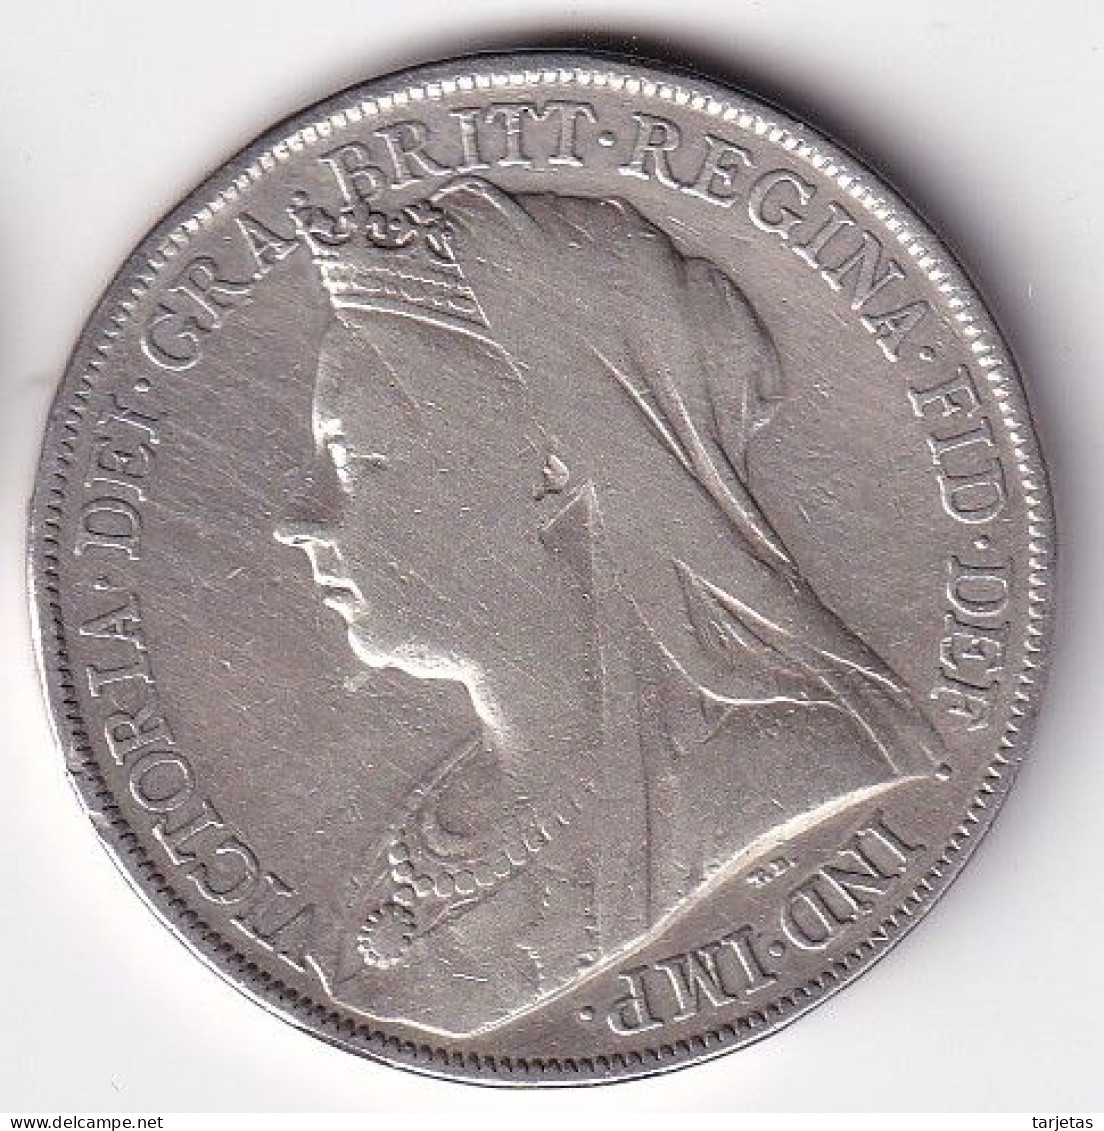 MONEDA DE PLATA DE REINO UNIDO DE 1 CROWN DEL AÑO 1900 (COIN) - M. 1 Crown